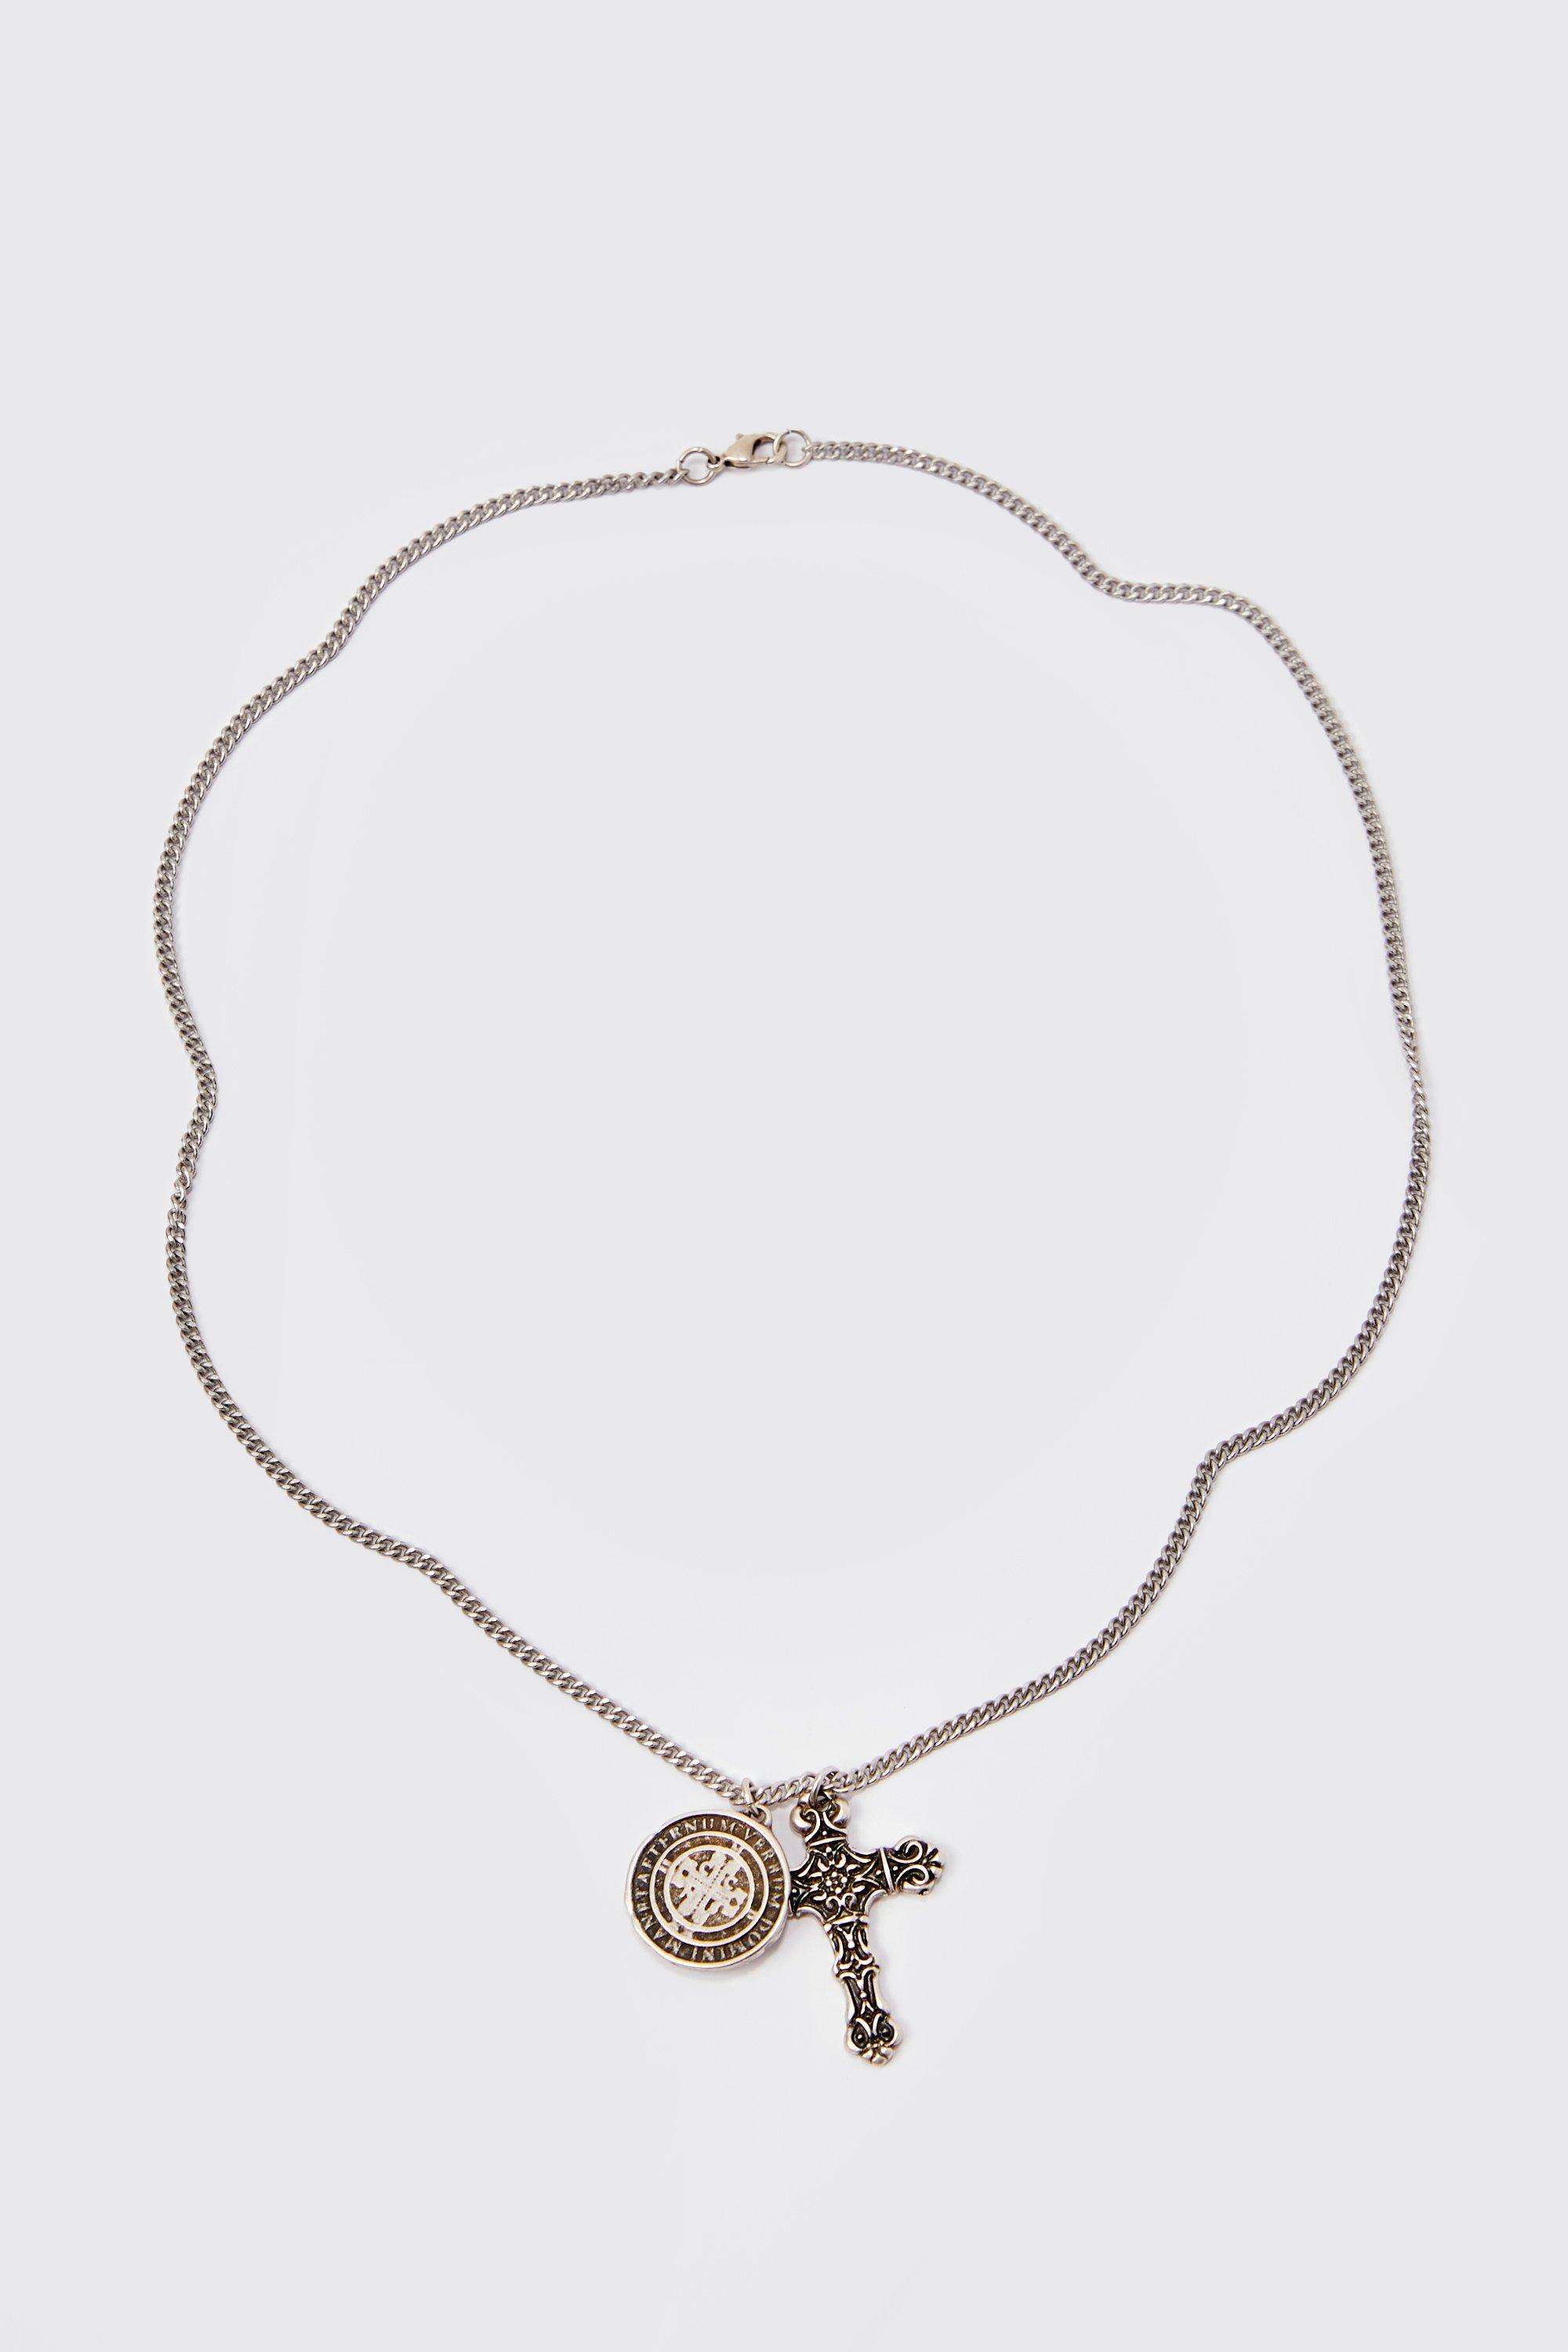 collier à pendentif croix homme - argent - one size, argent